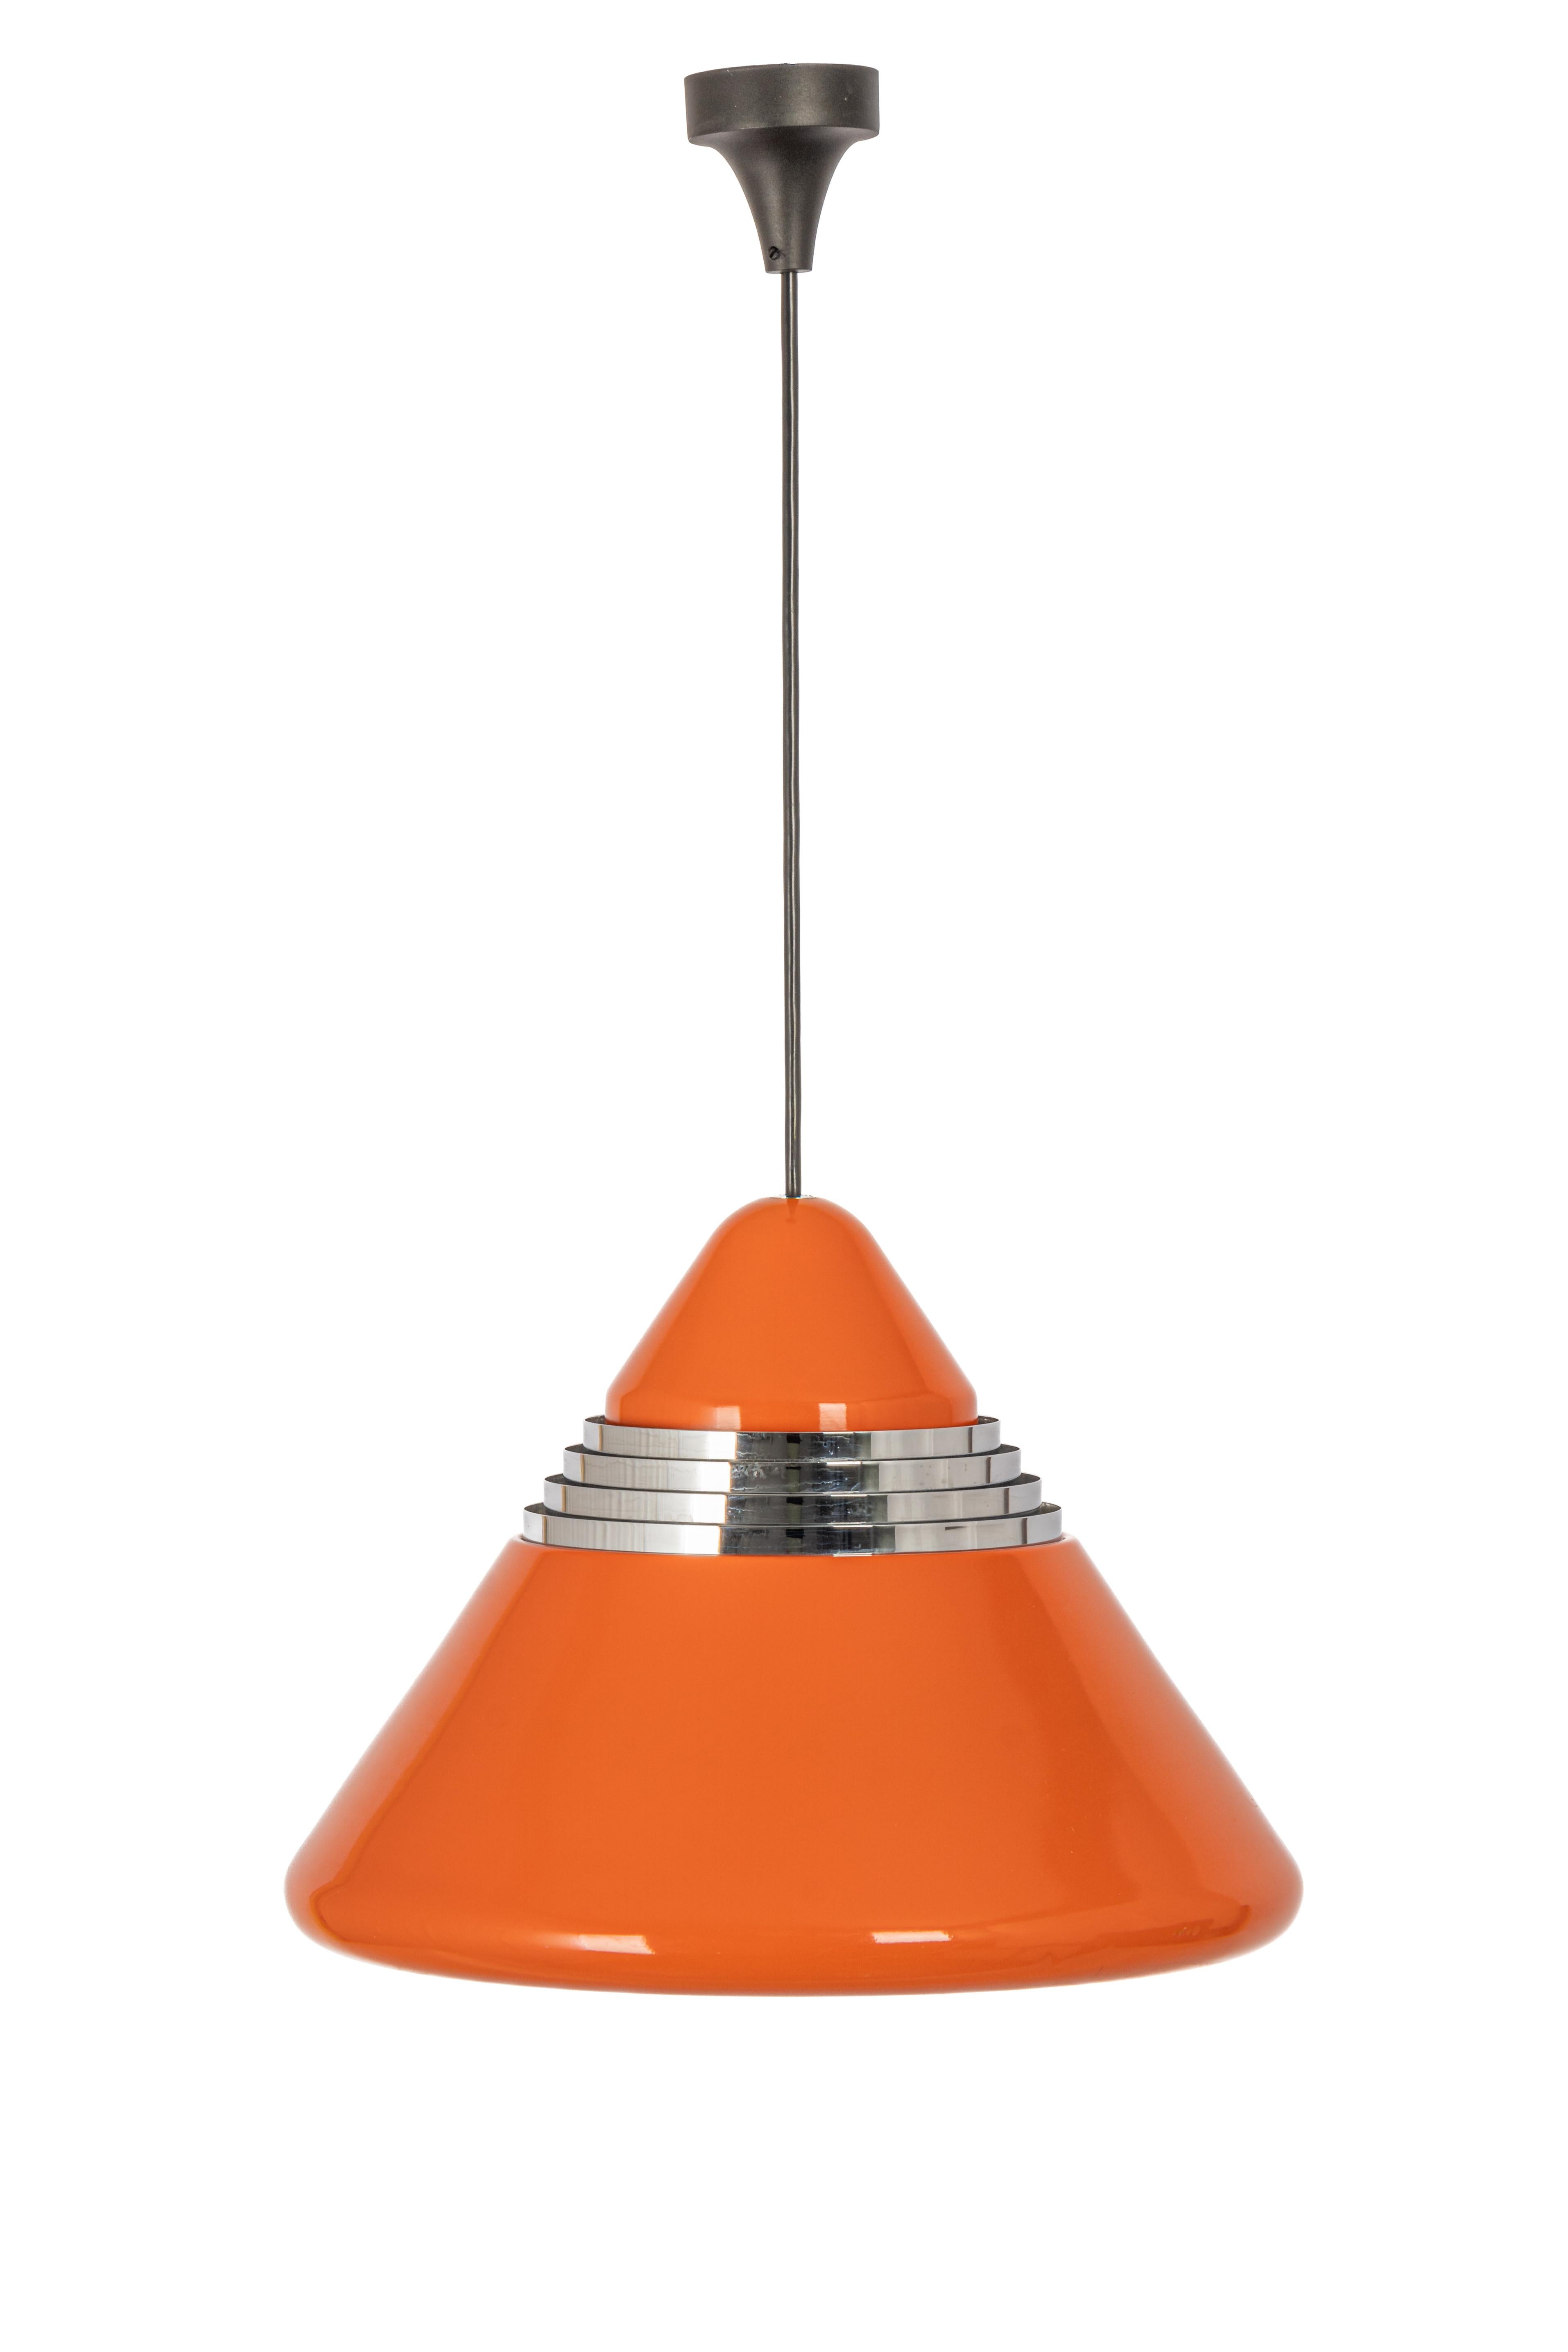 Superbe lampe suspendue conçue par Kazuo Motozawa pour Staff, Allemagne, 1970
De haute qualité, fabriqué en Allemagne, en chrome et en métal. Petits signes d'âge.

Le pendentif nécessite 1 ampoule E27 Standard.
Les ampoules ne sont pas incluses.